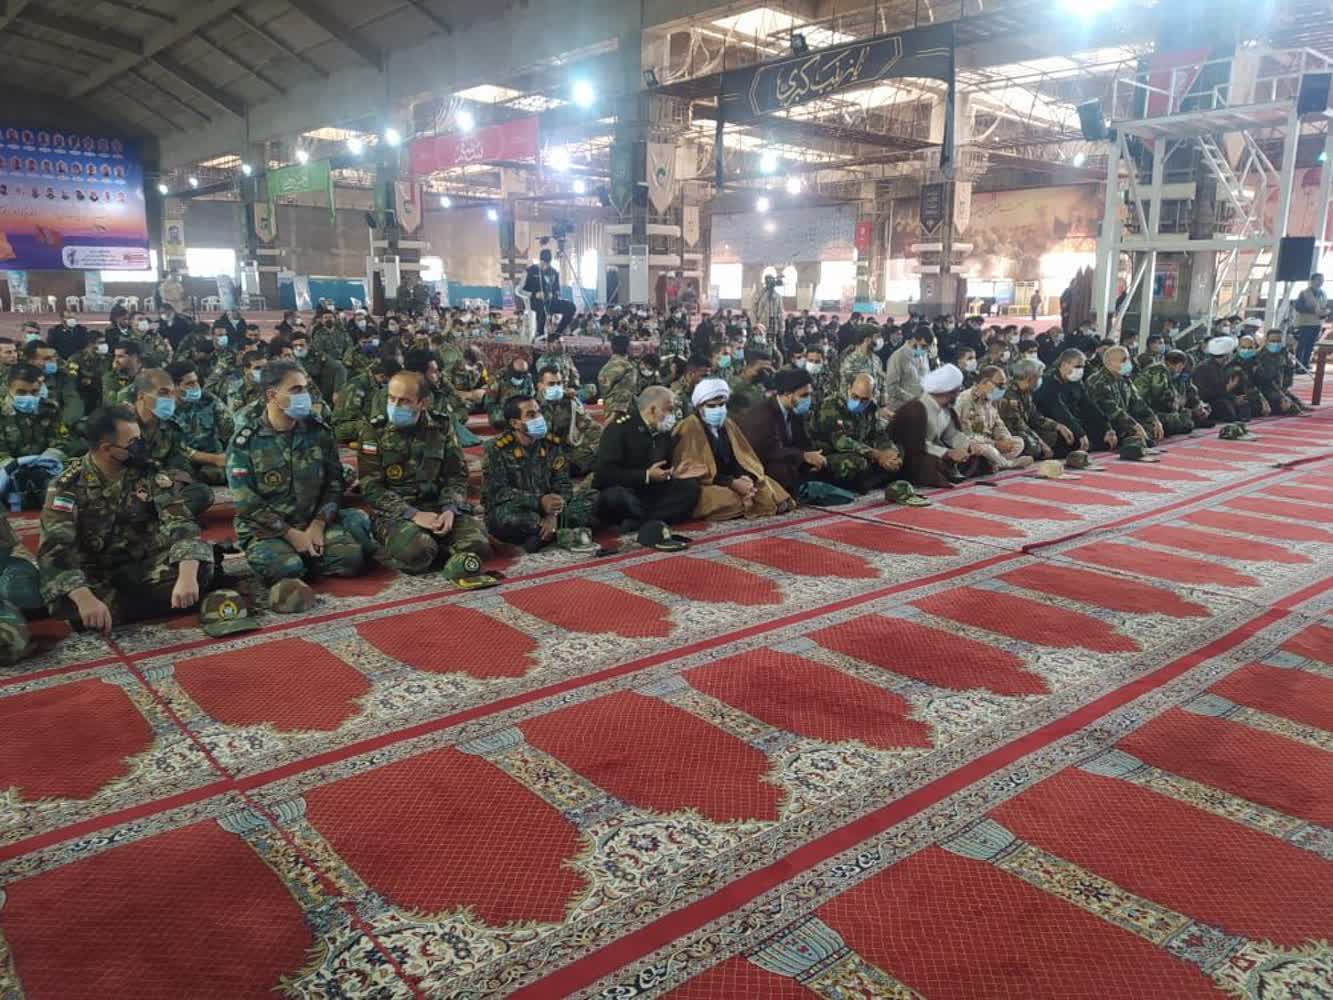 قوات الجیس في خوزستان یجددون العهد مع المثل العليا للثورة الإسلامية + صور